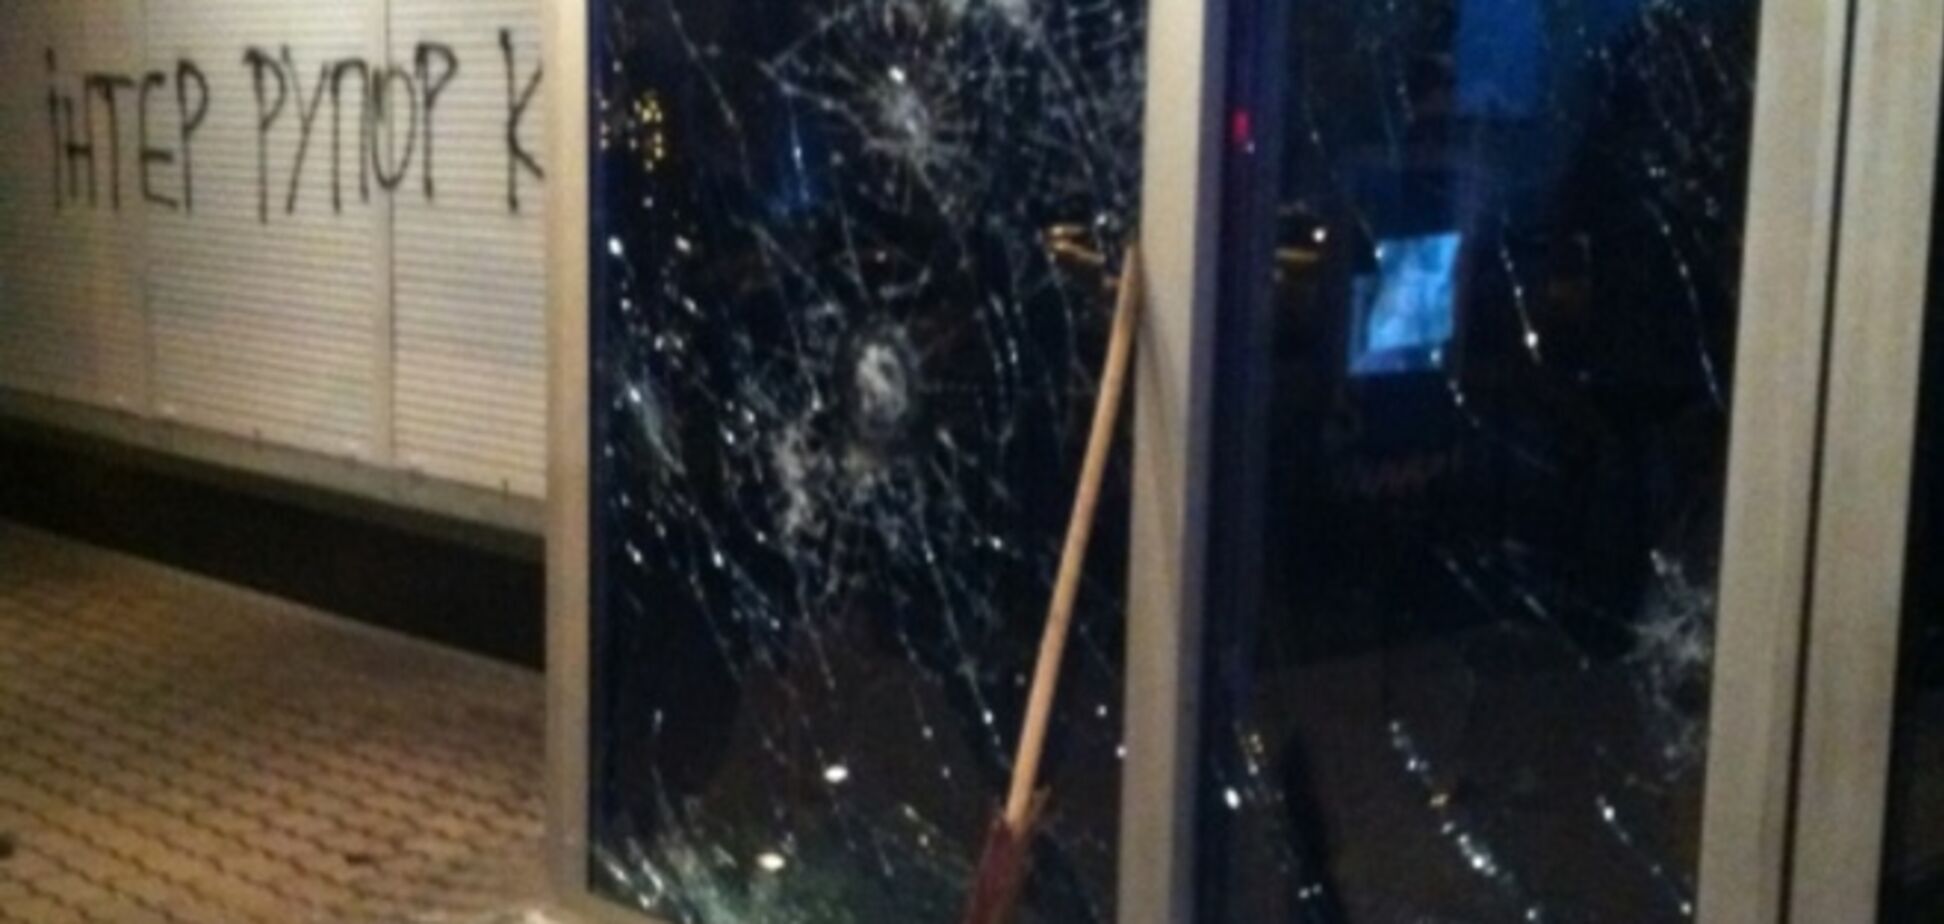 'Интер' забросали камнями: фото после нападения на офис